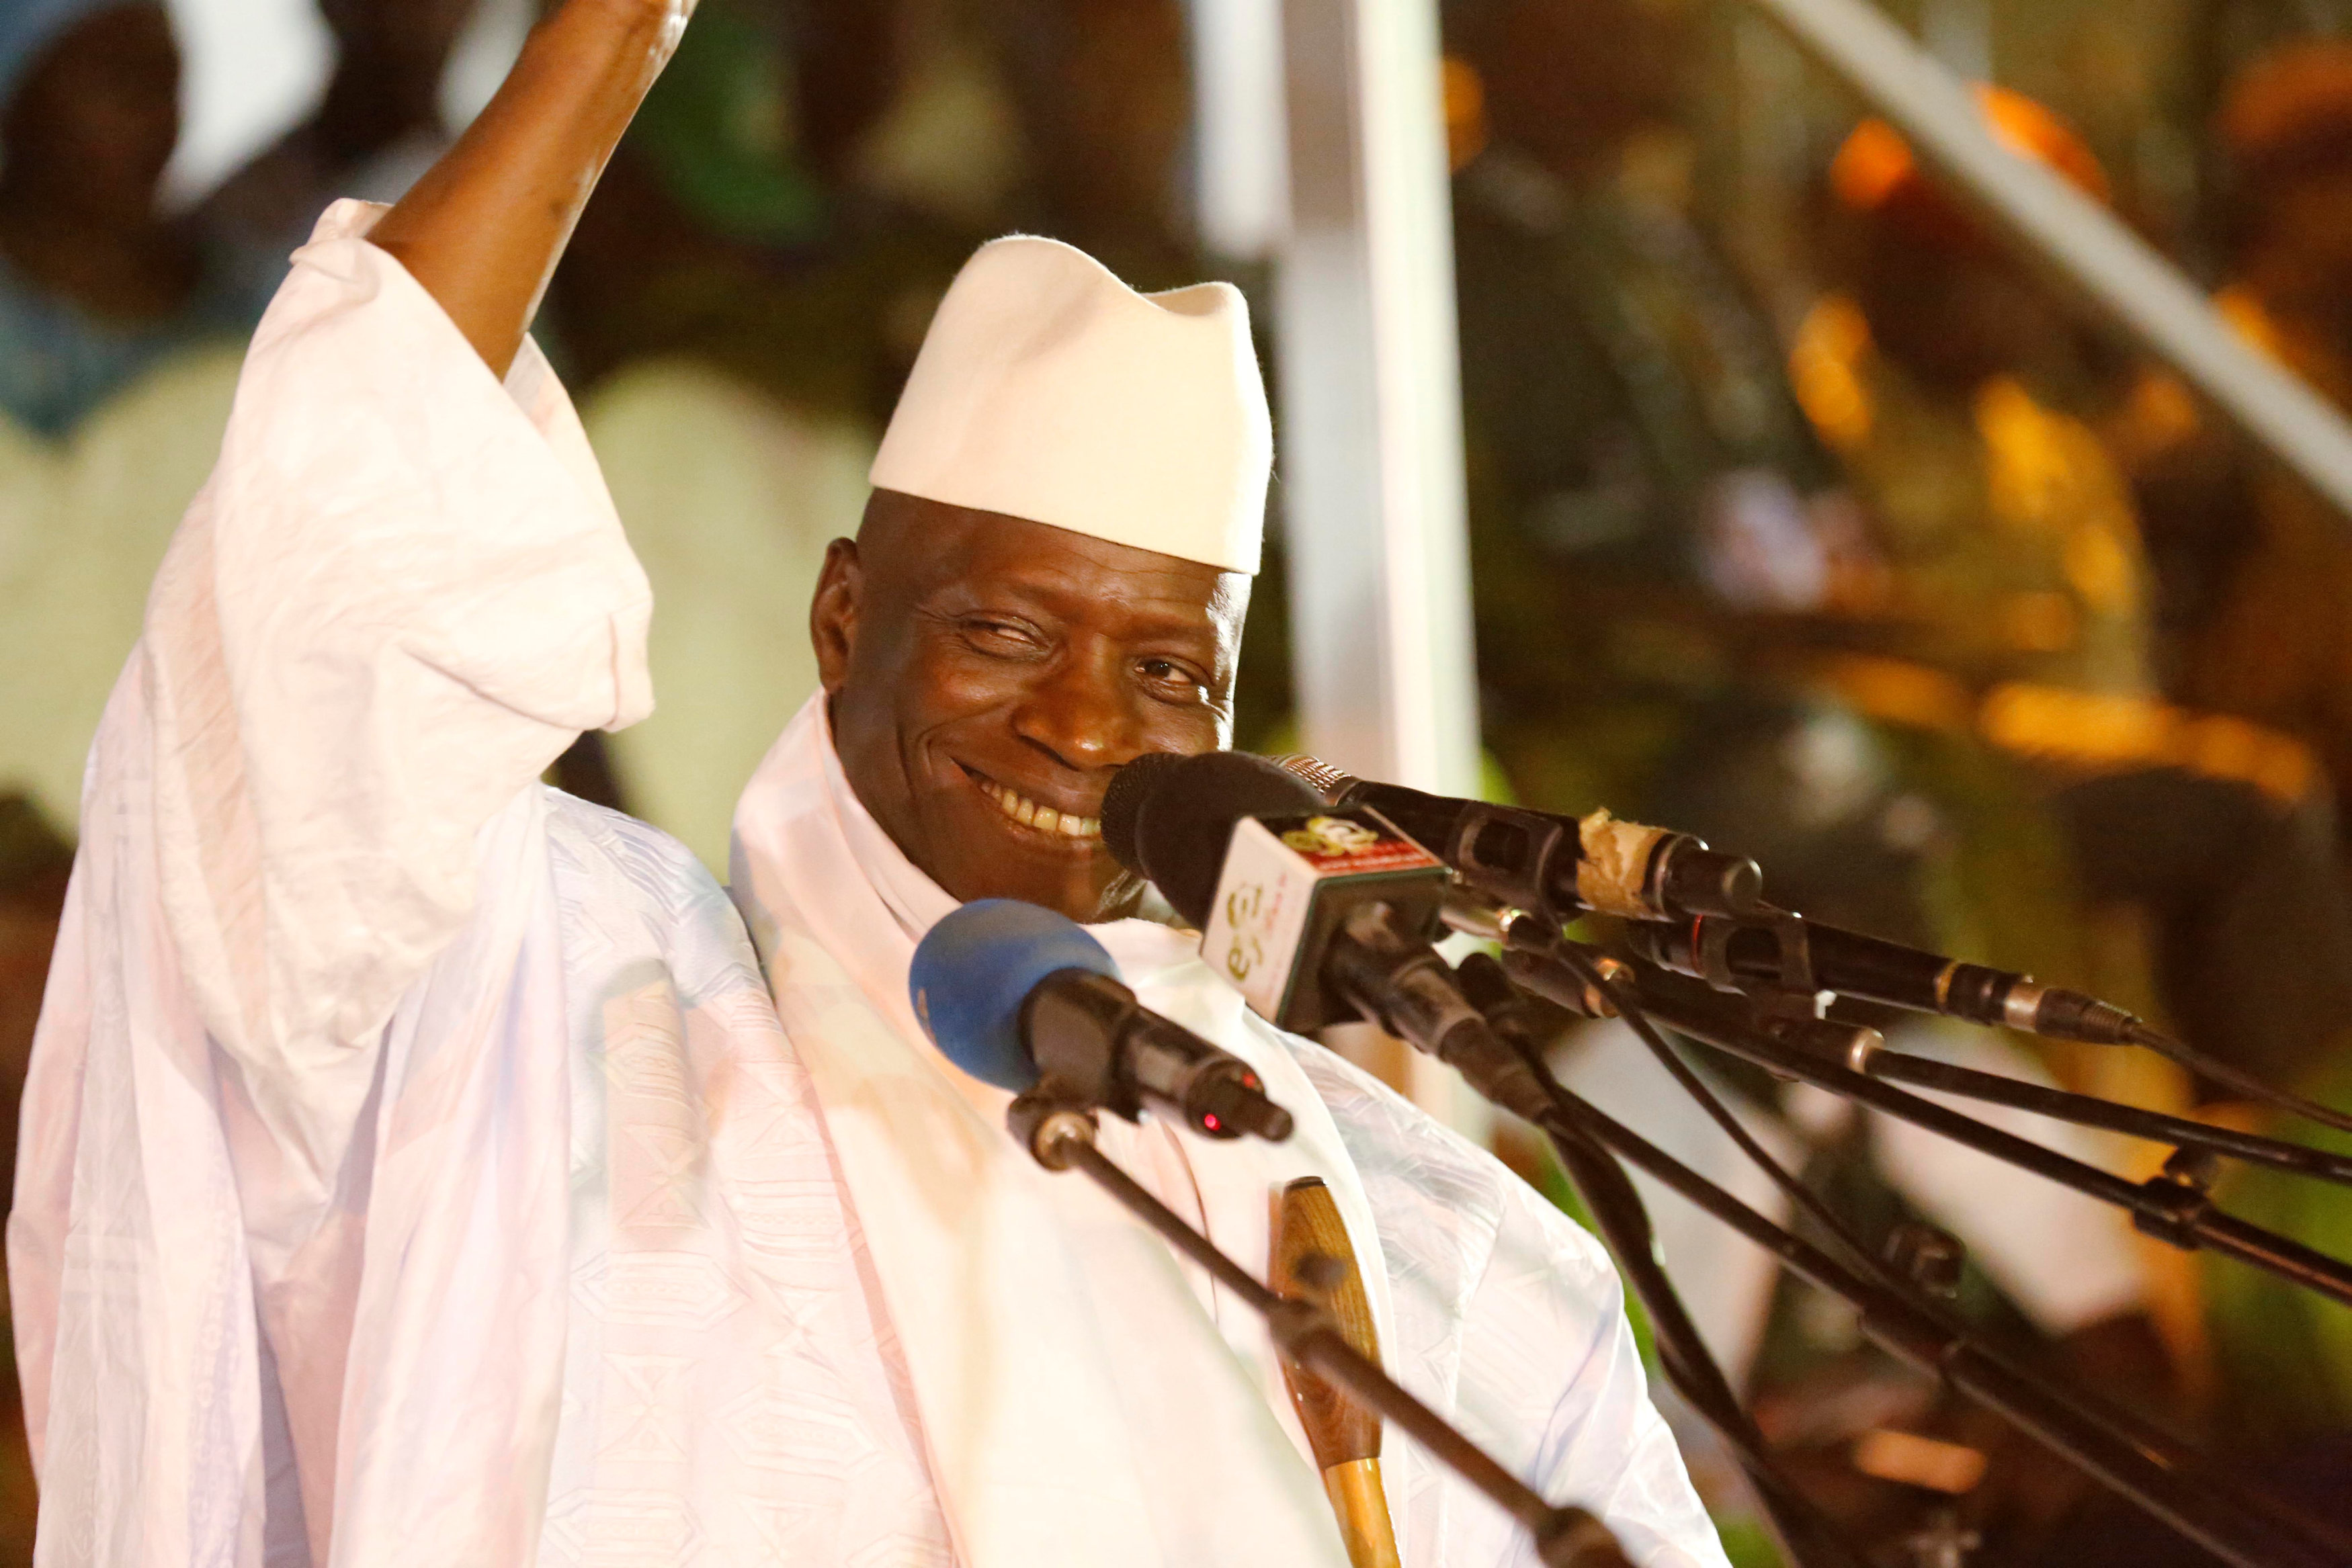 Την ήττα του στις εκλογές παραδέχεται ο πρόεδρος της Γκάμπια